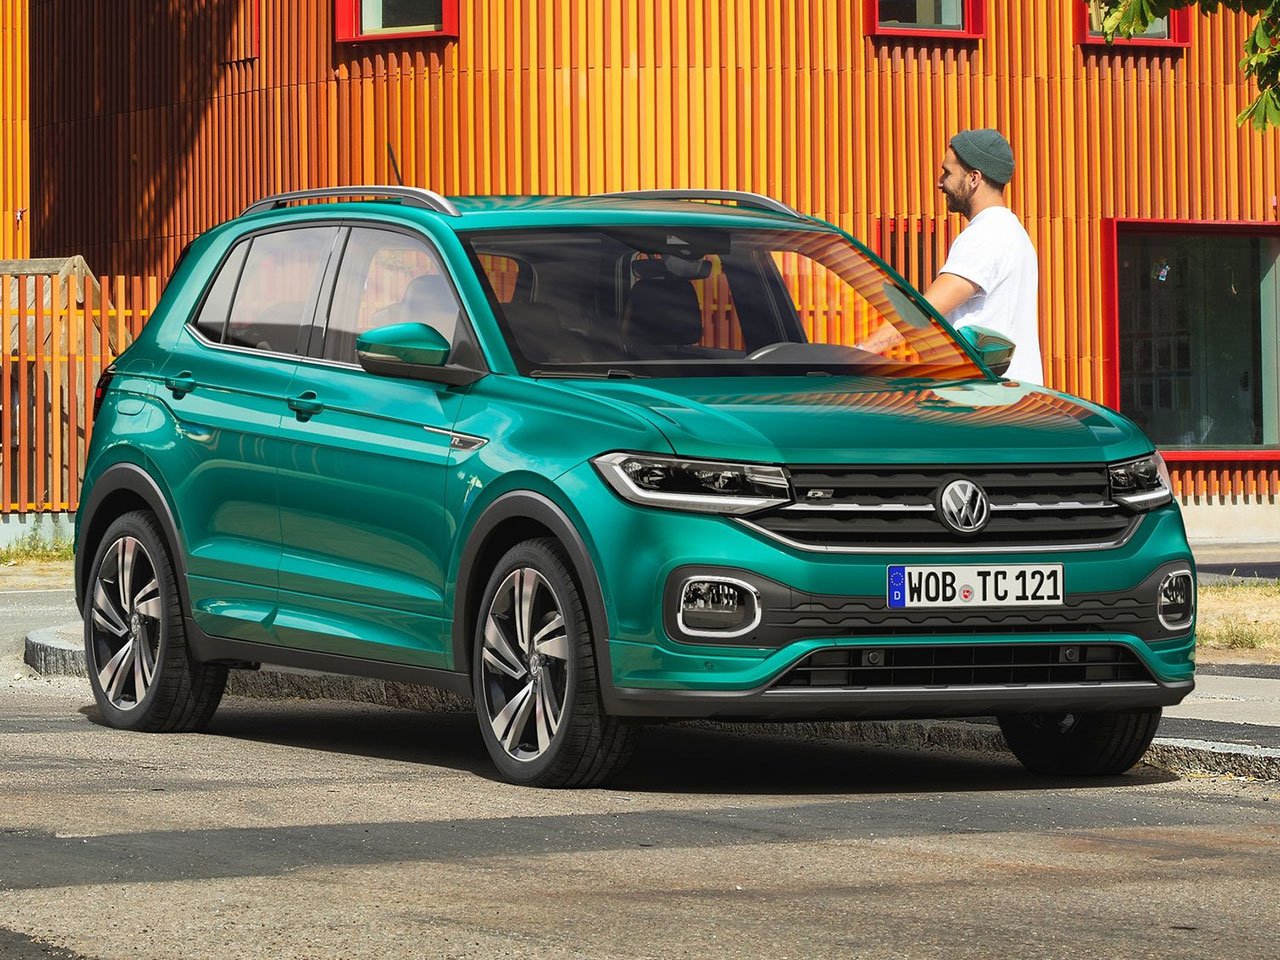 Rebaixat 4.983 euros, etiqueta ECO i l'alternativa més perillosa per al Volkswagen T-Cros